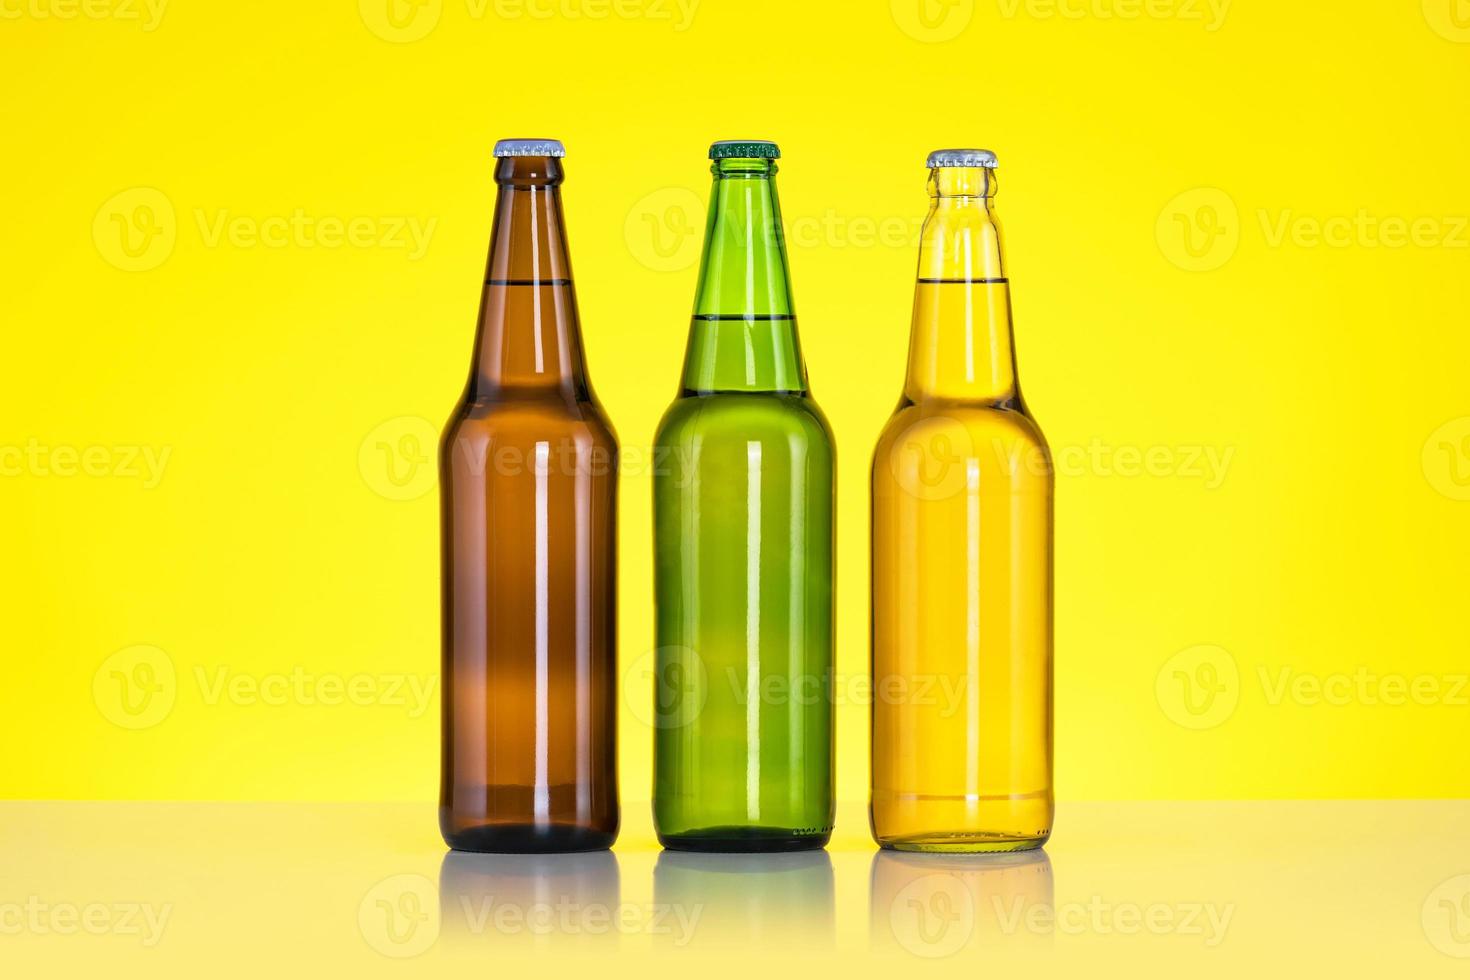 groep van drie flessen bier geïsoleerd op gele achtergrond foto